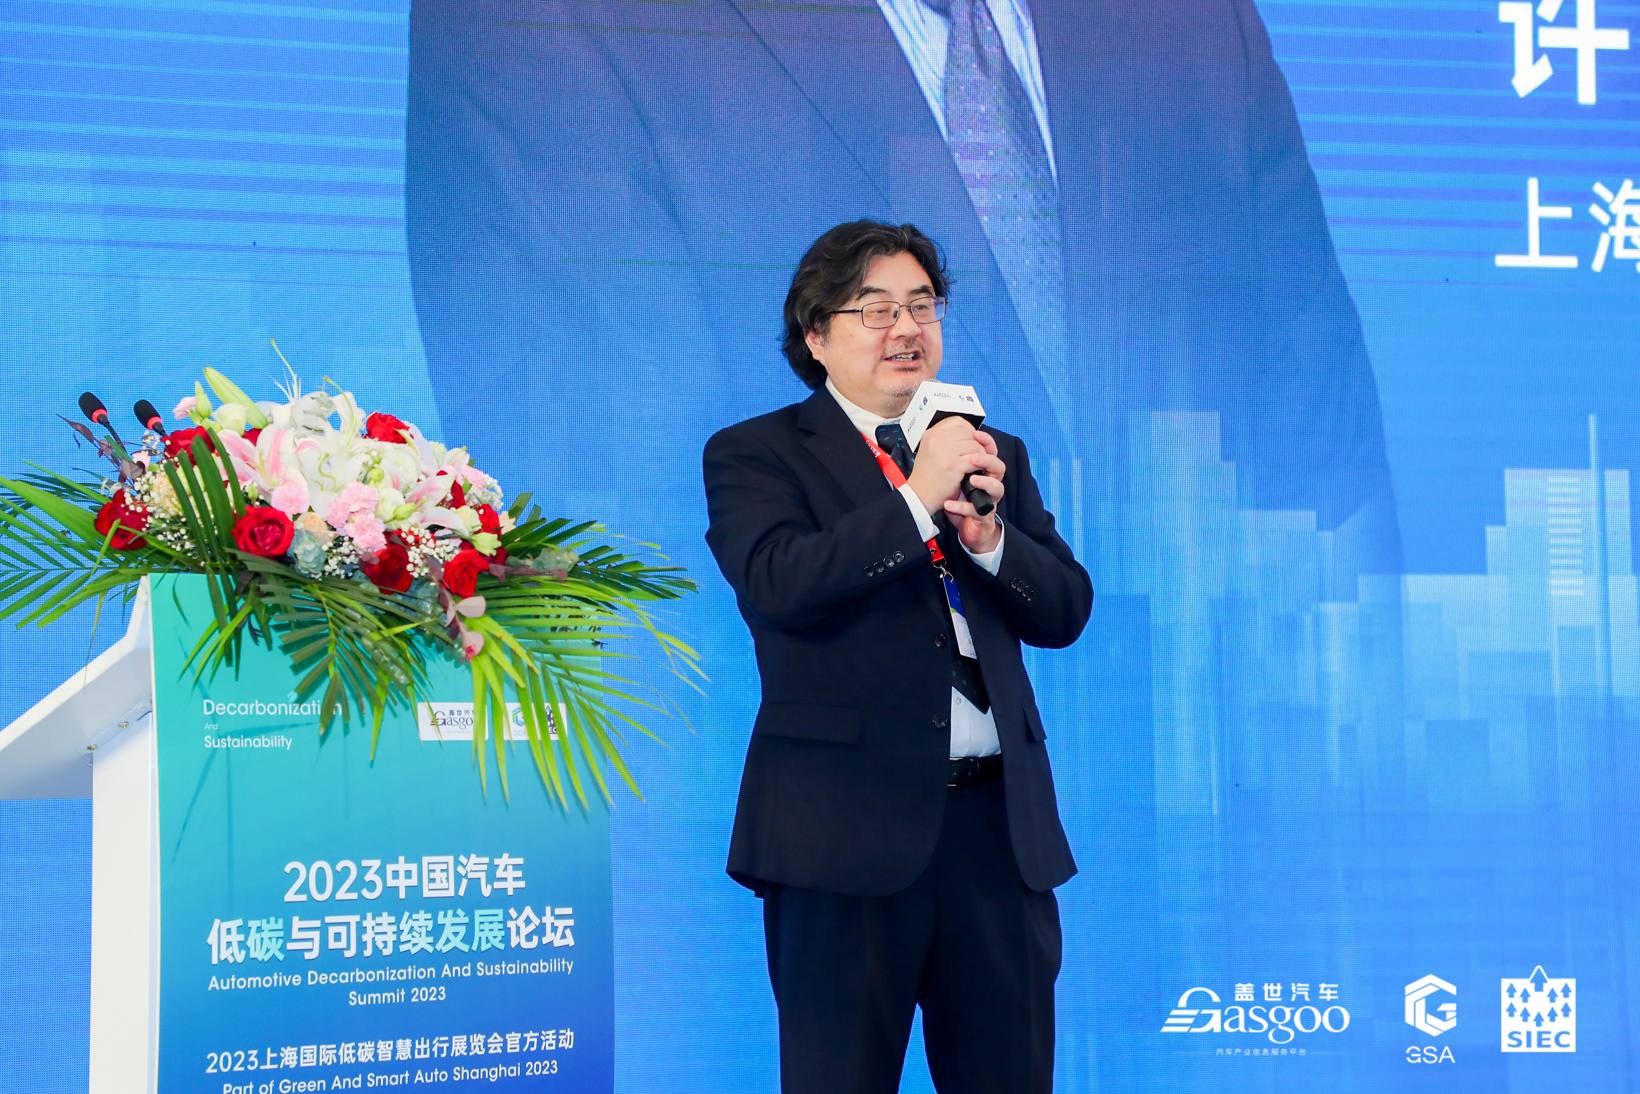 盛大开幕! | 2023中国汽车低碳与可持续发展论坛